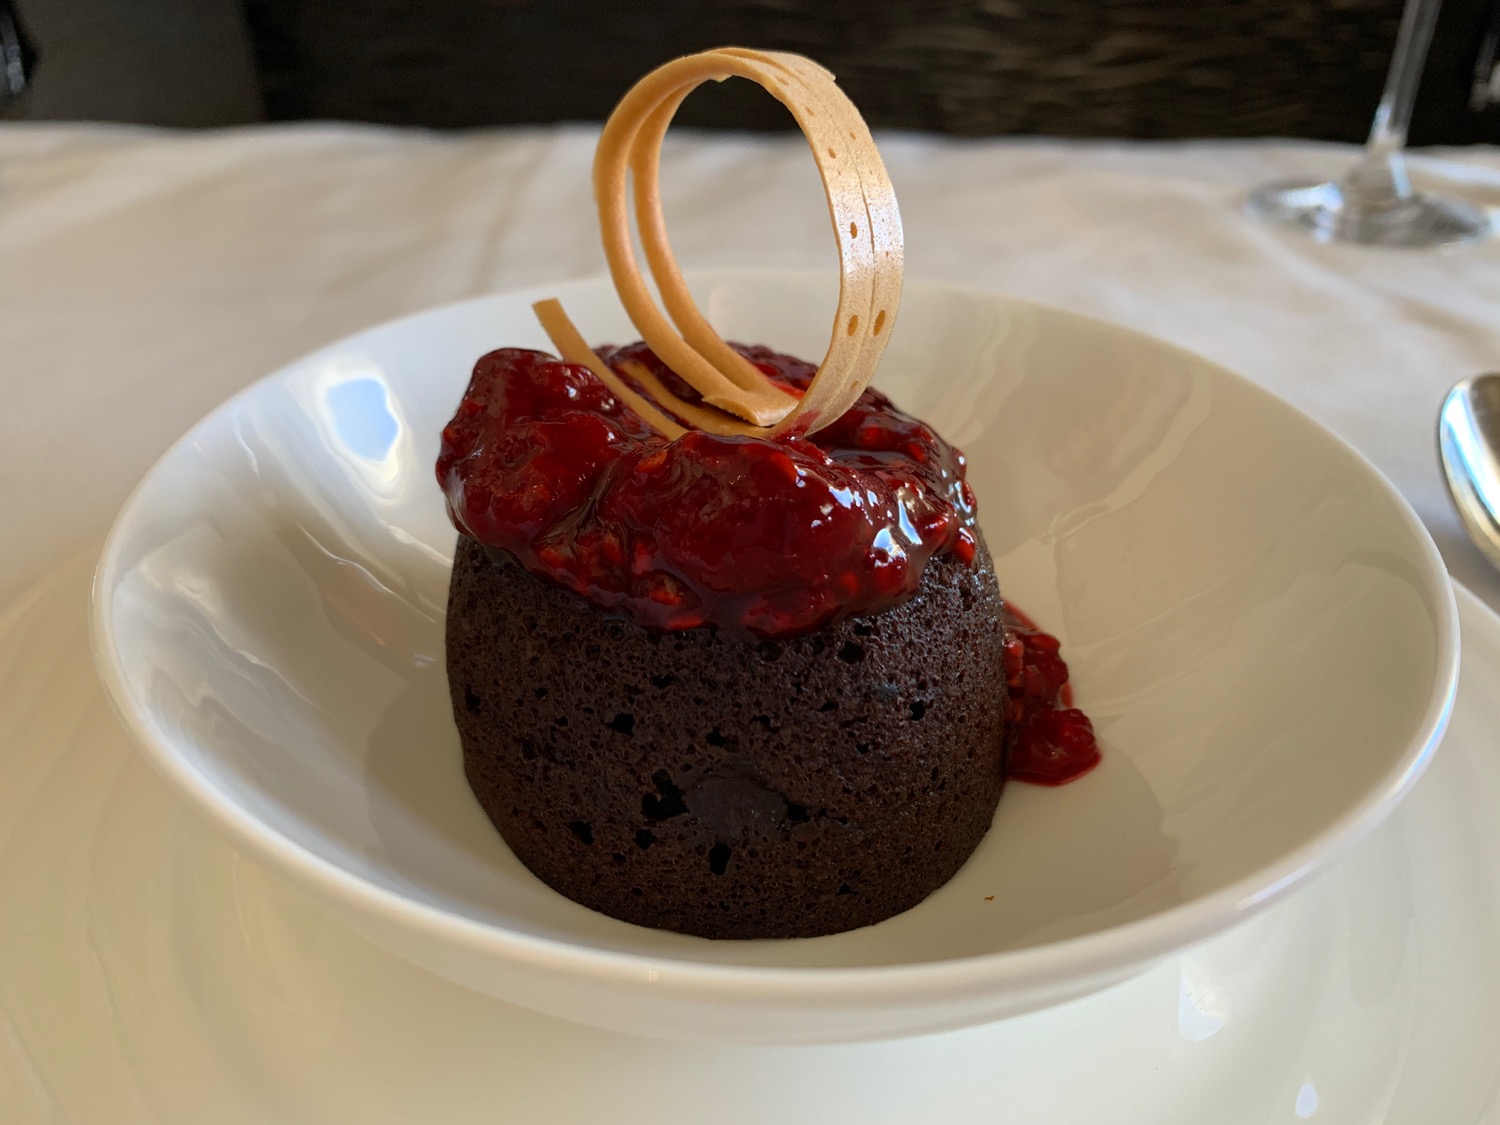 a dessert in a bowl